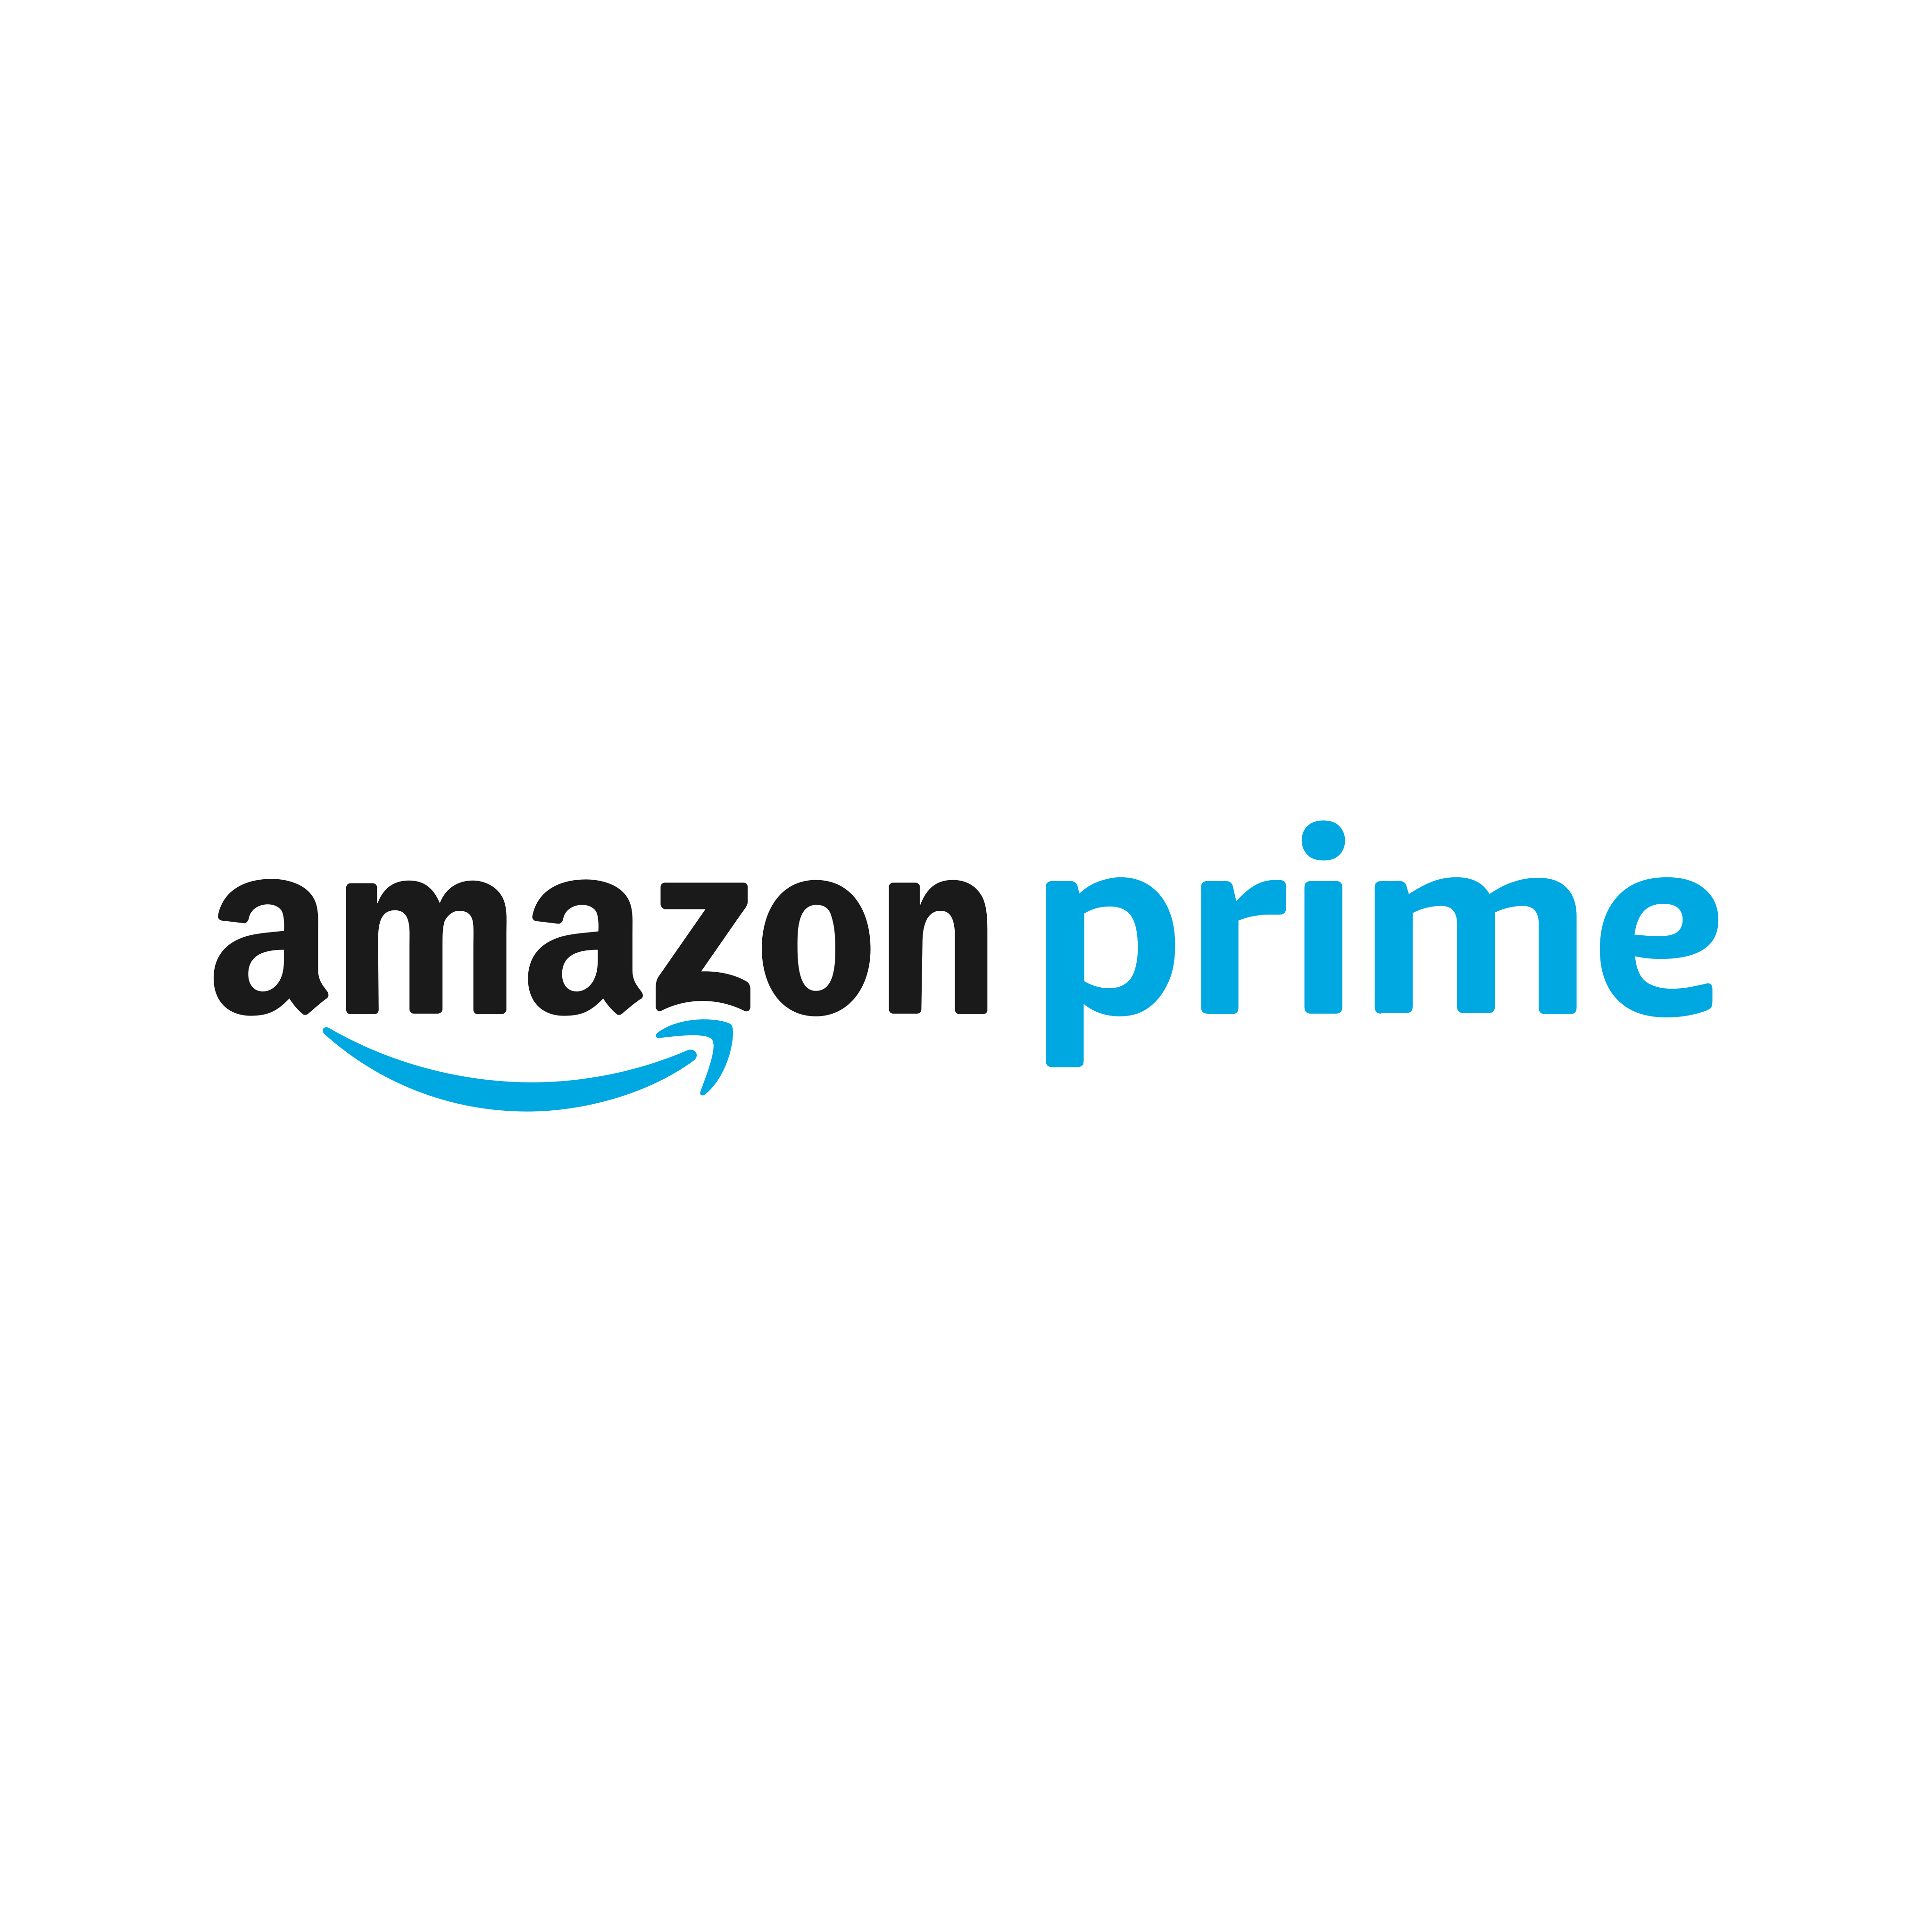 amazon prime logo 0 - Amazon Prime Logo